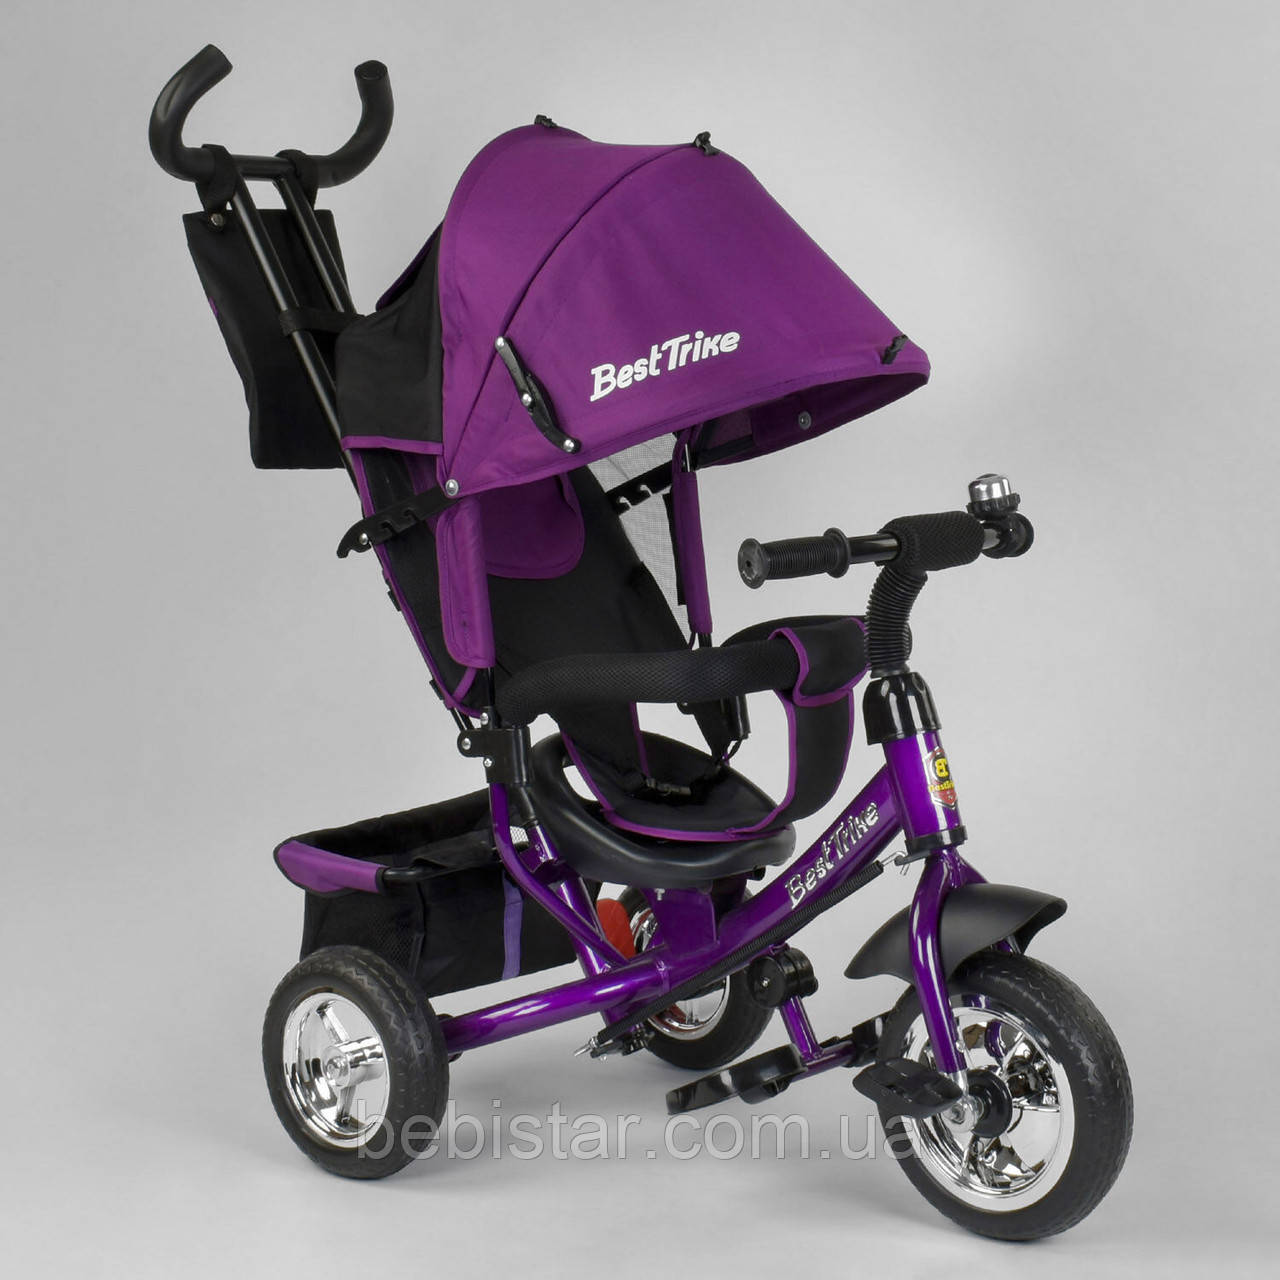 Детский трехколесный велосипед фиолетовый Best Trike 6588 колесо ПЕНА деткам от 1 года